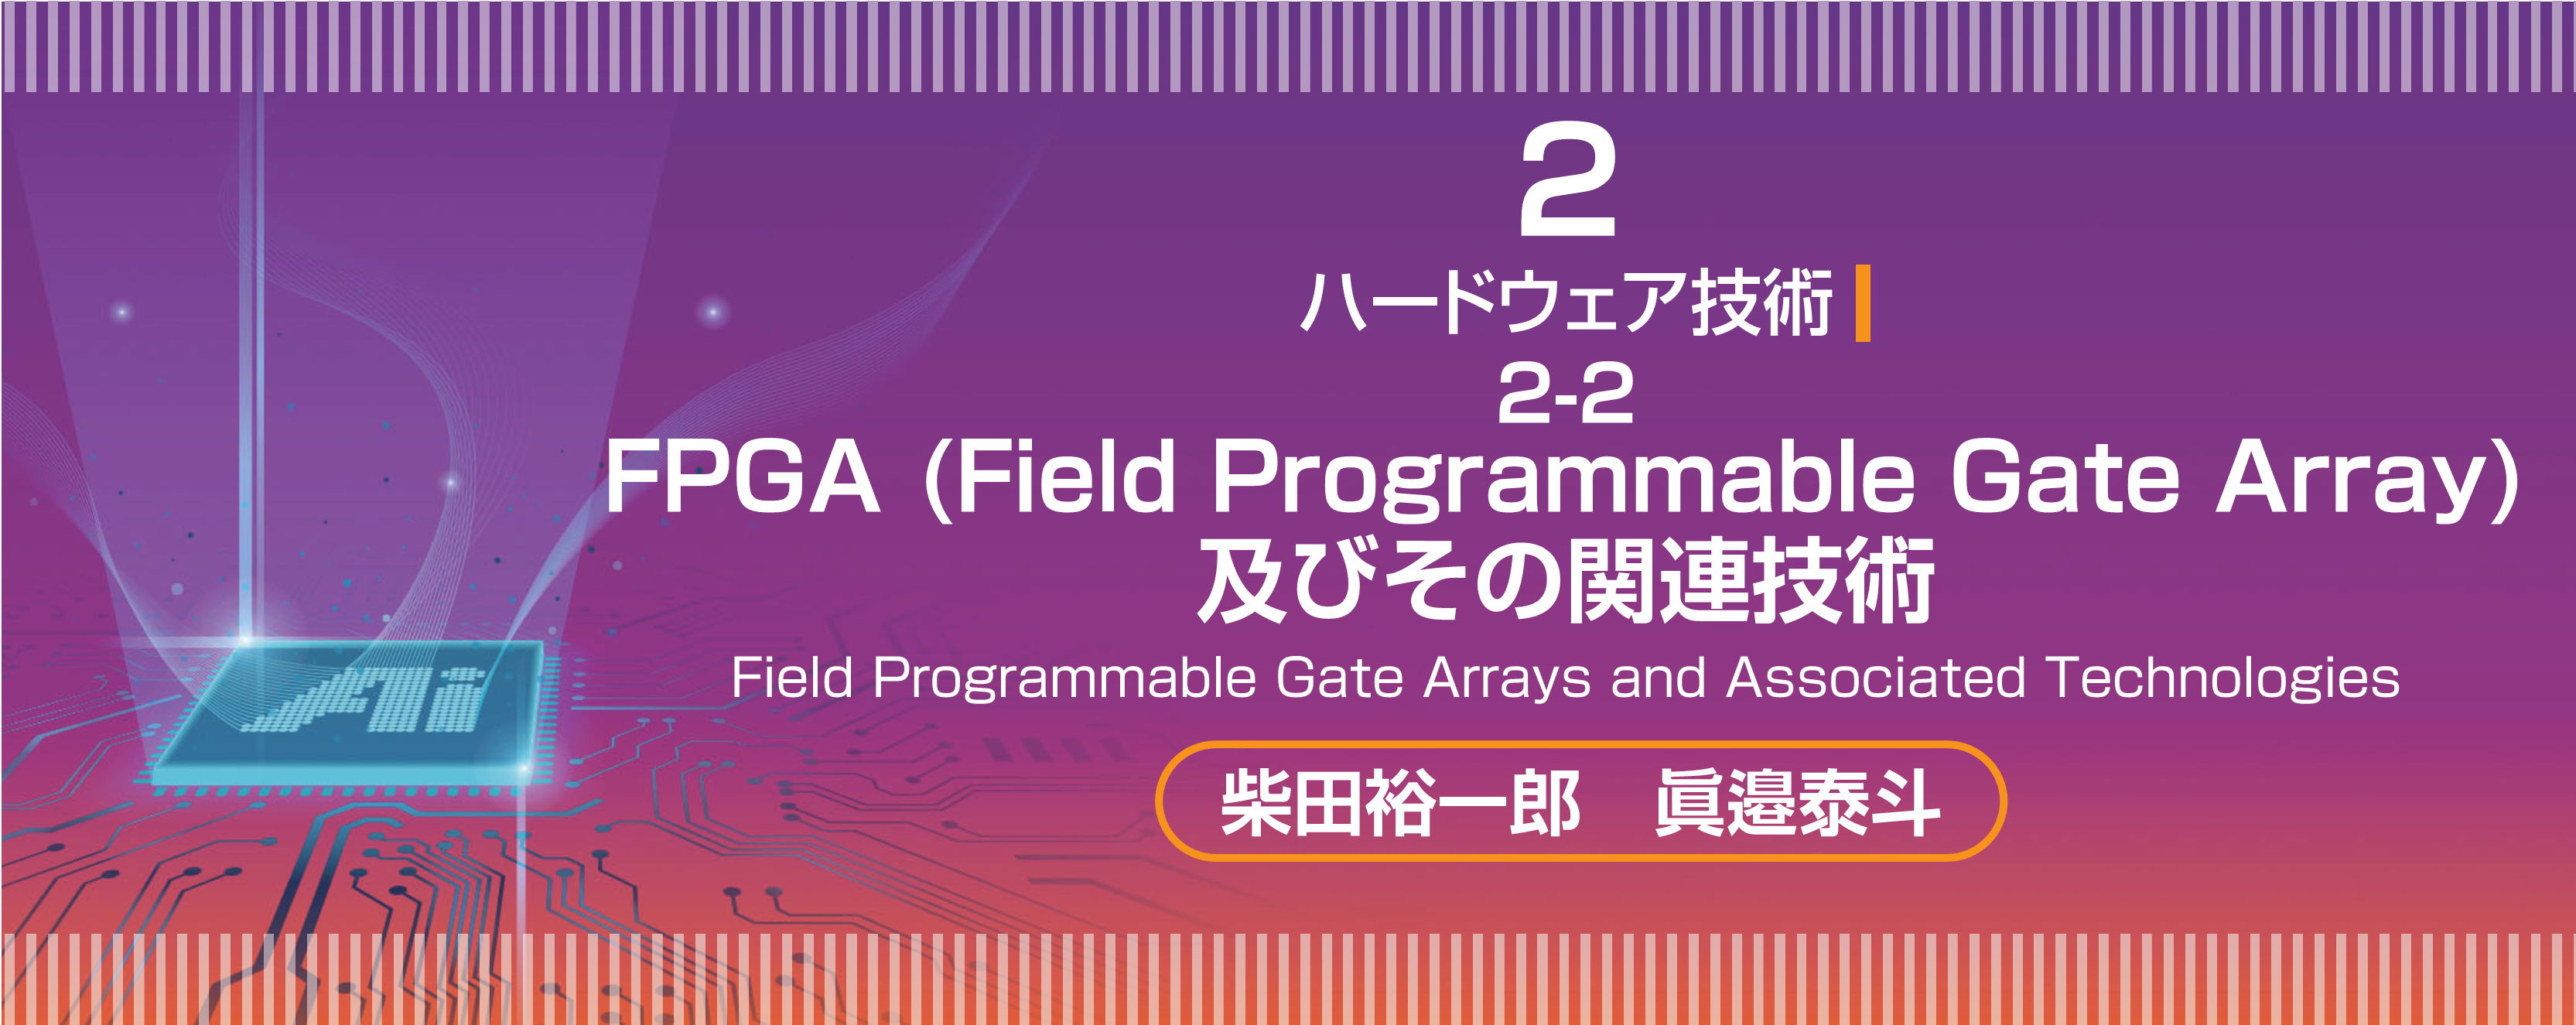 特集 2-2　FPGA（Field Programmable Gate Array）及びその関連技術